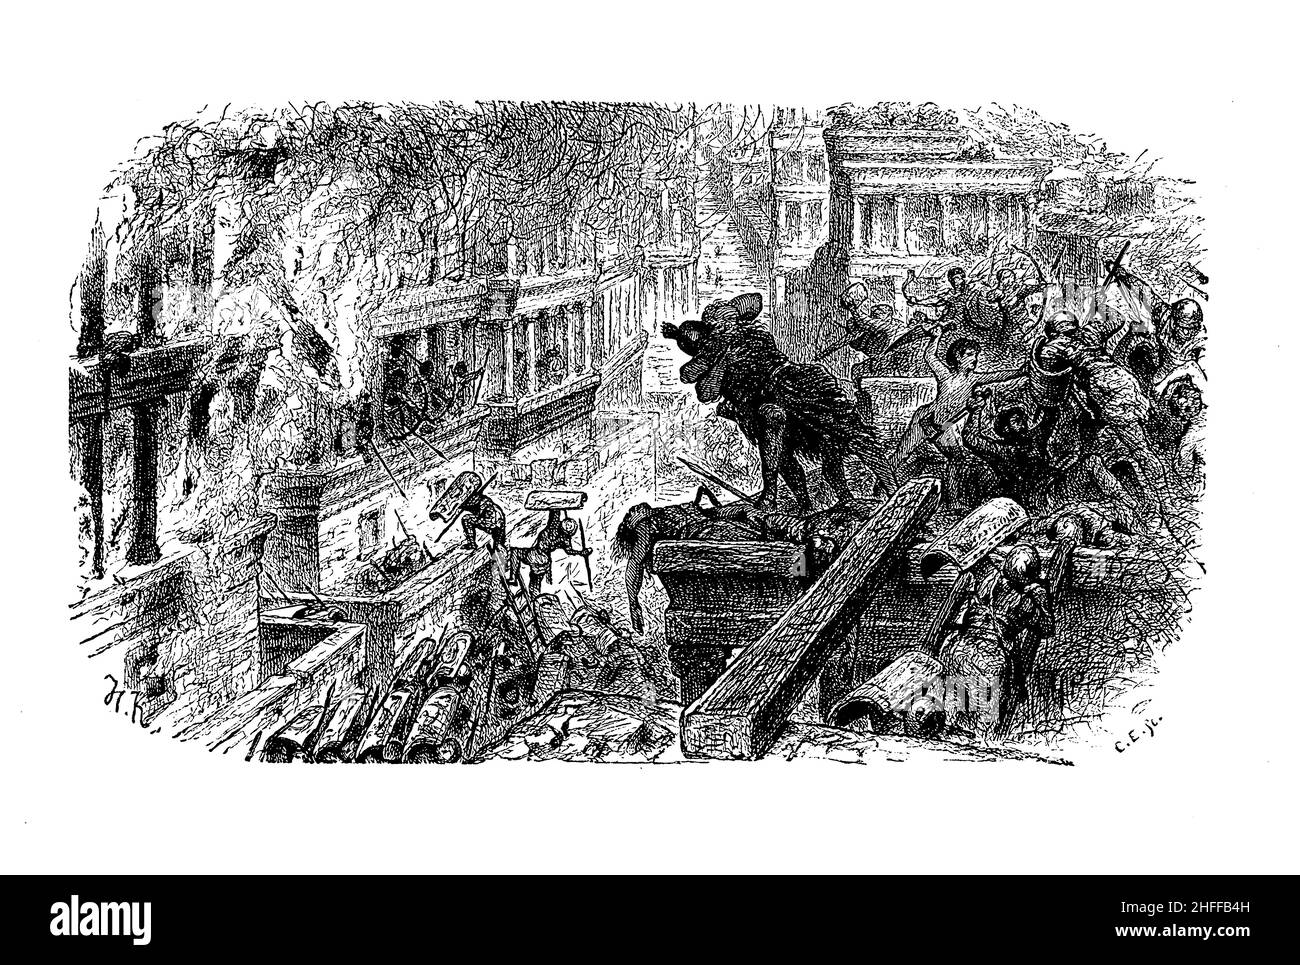 Szene, die die Zerstörung Karthago im dritten punischen Krieg durch die römischen Legionen von Scipio Africanus darstellt Stockfoto